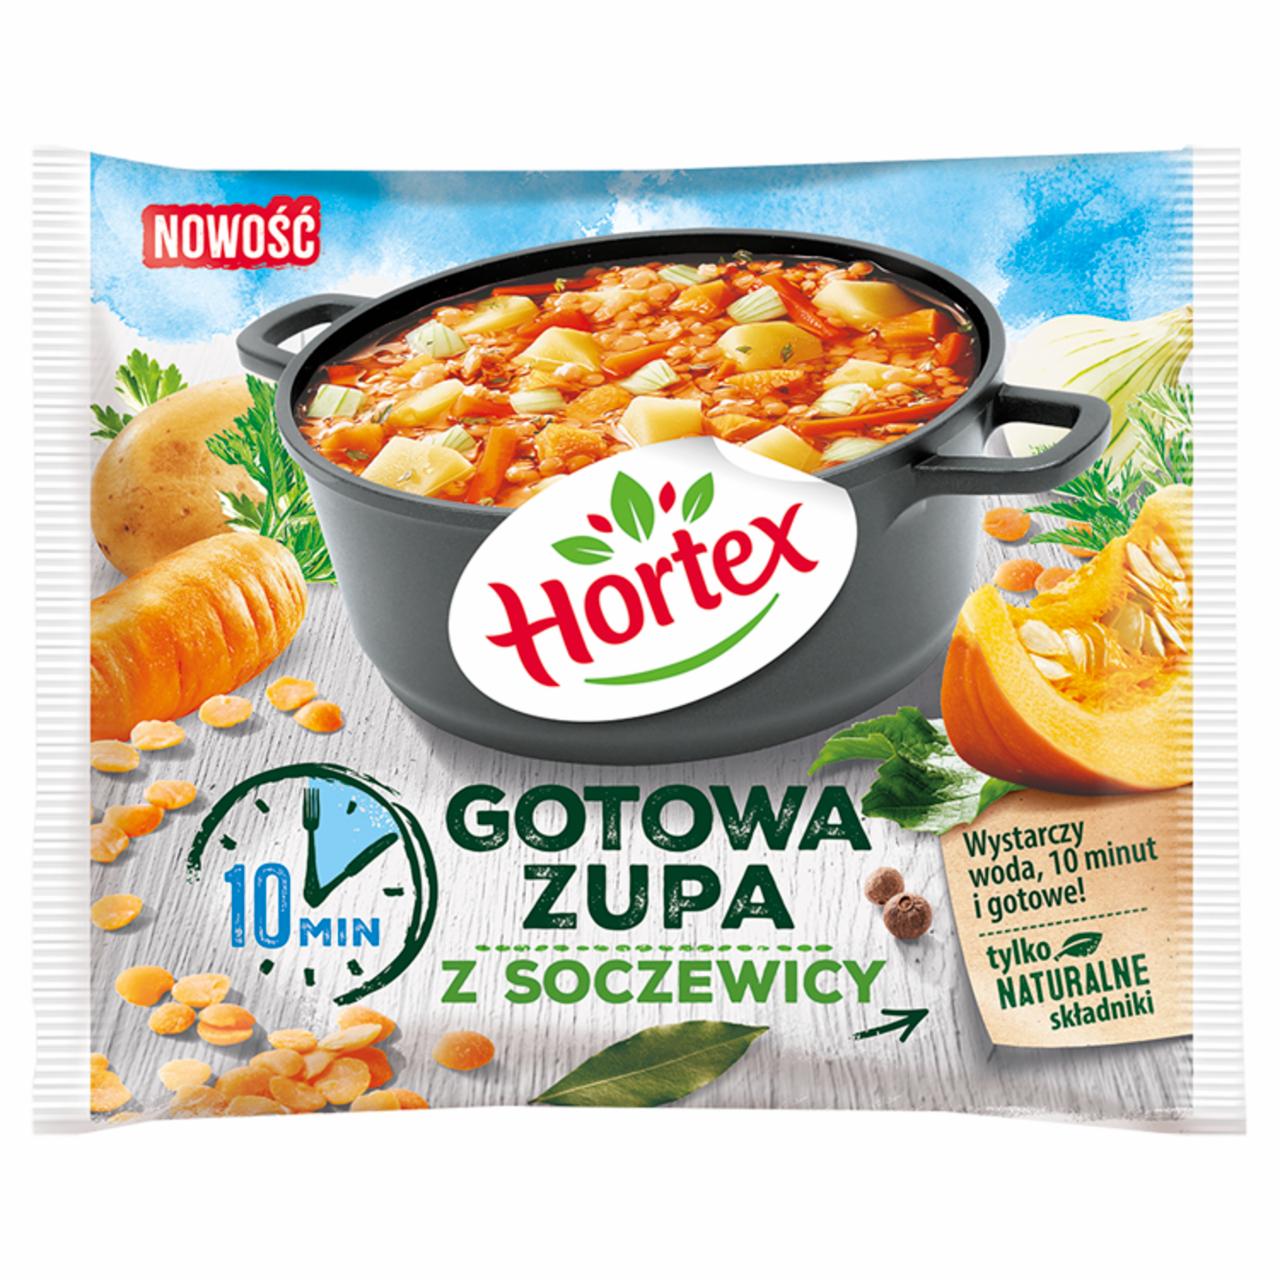 Zdjęcia - Hortex Gotowa zupa z soczewicy 350 g